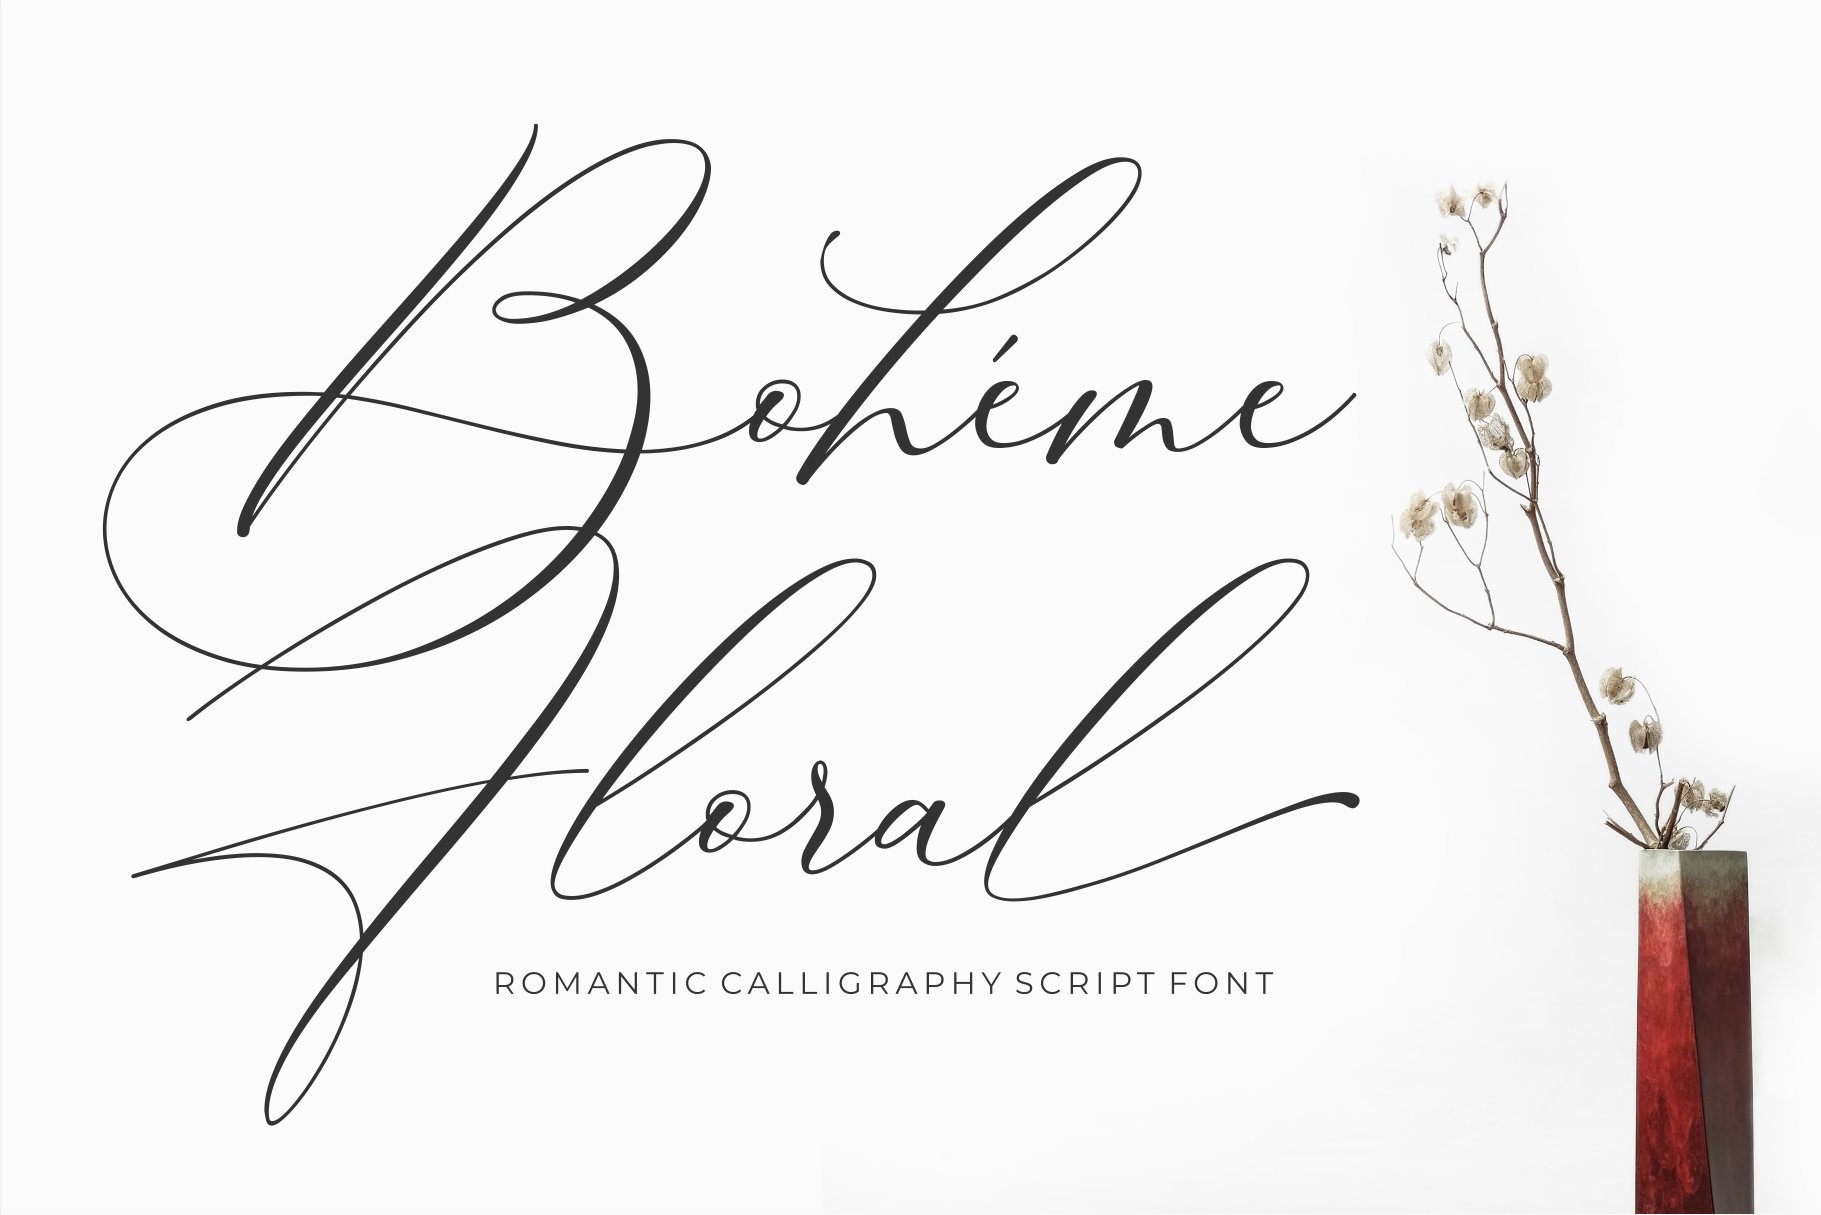 Luxury Font - Boheme Floral cover image.